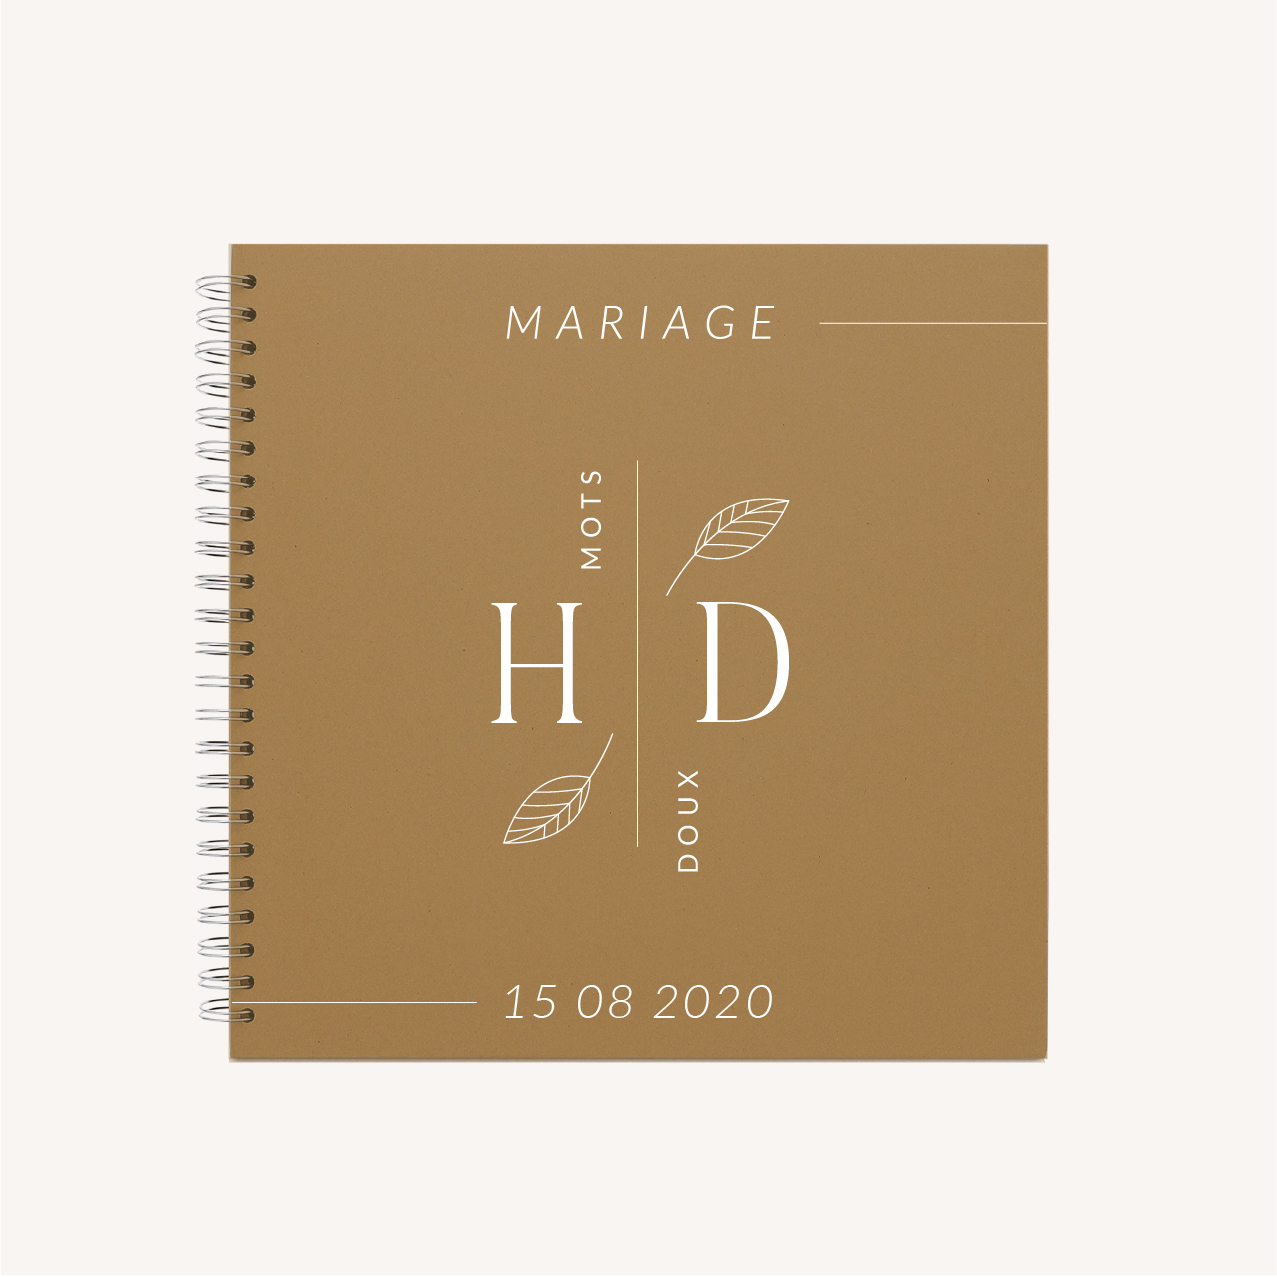 Livre d'or original en forme de cadre pour mariage